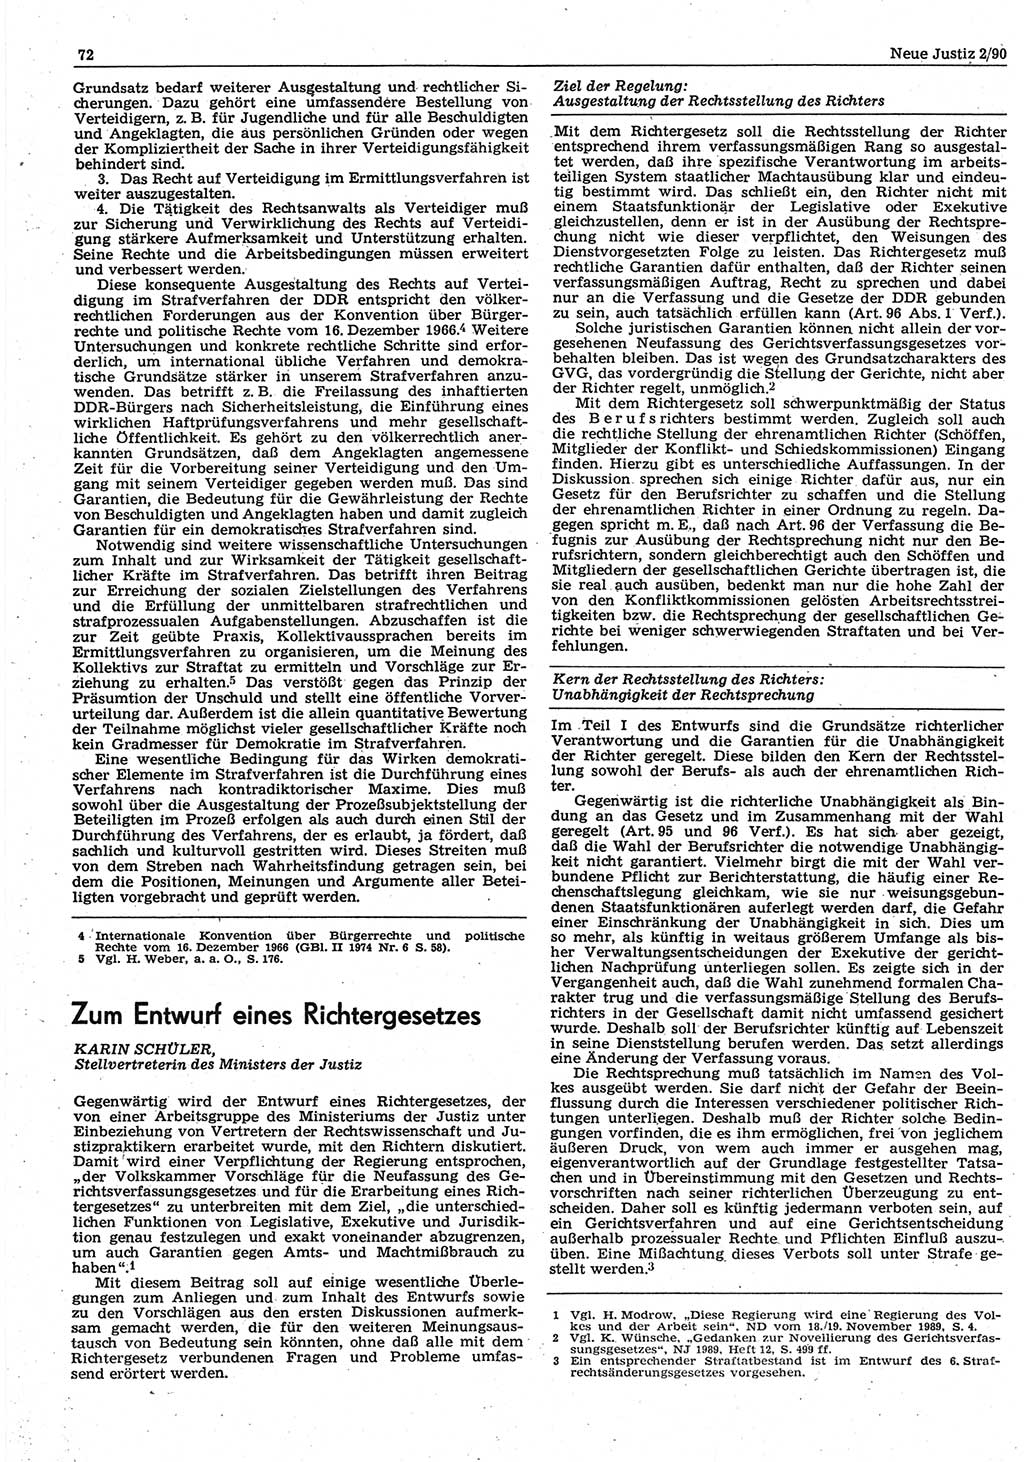 Neue Justiz (NJ), Zeitschrift für Rechtsetzung und Rechtsanwendung [Deutsche Demokratische Republik (DDR)], 44. Jahrgang 1990, Seite 72 (NJ DDR 1990, S. 72)